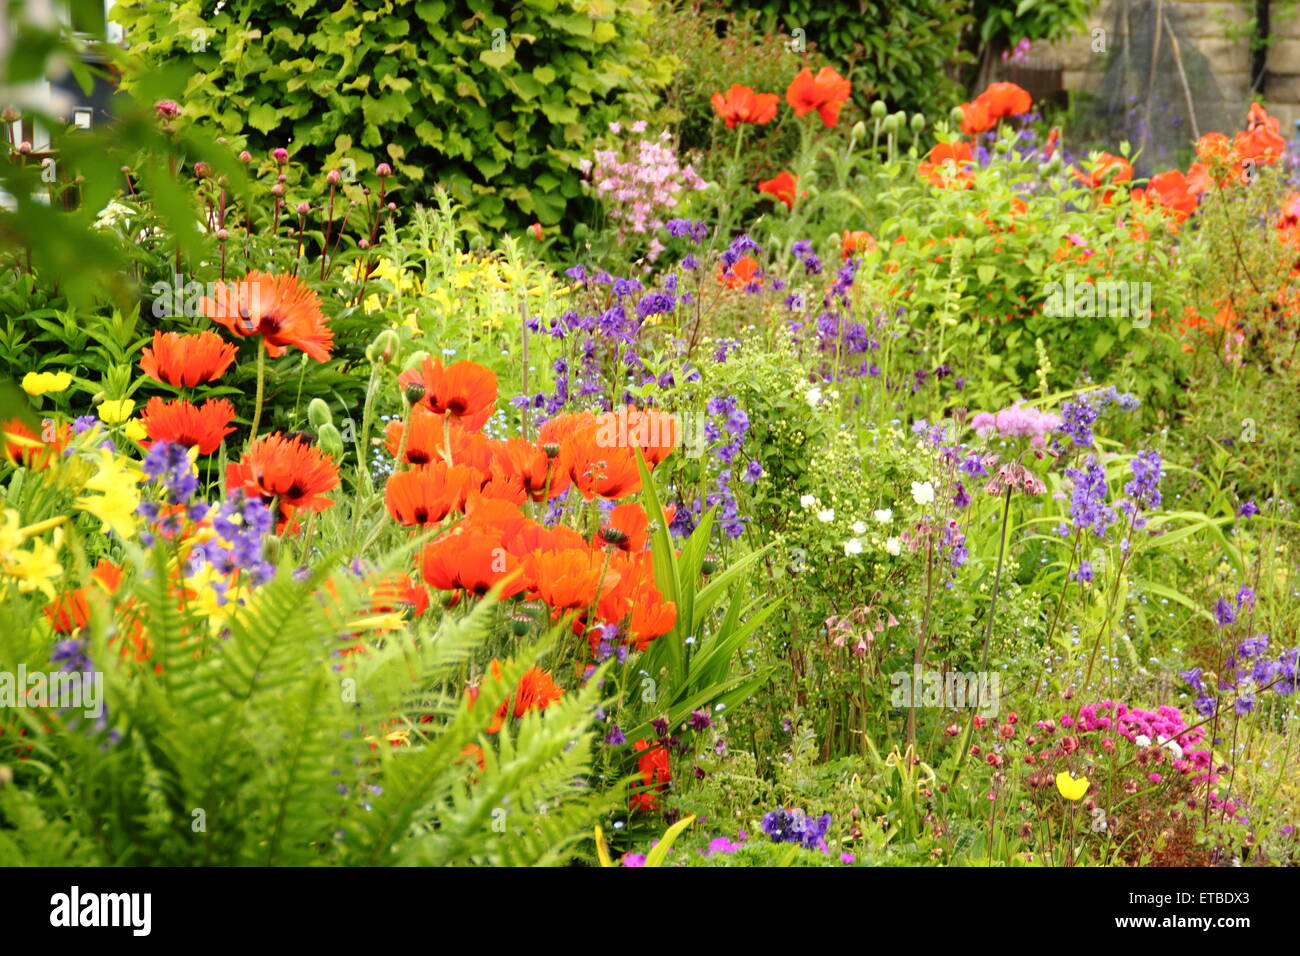 Un cottage Inglese giardino confine punteggiato da papaveri orientali, aquilegias e felci in un giorno caldo e soleggiato, England Regno Unito - Giugno Foto Stock